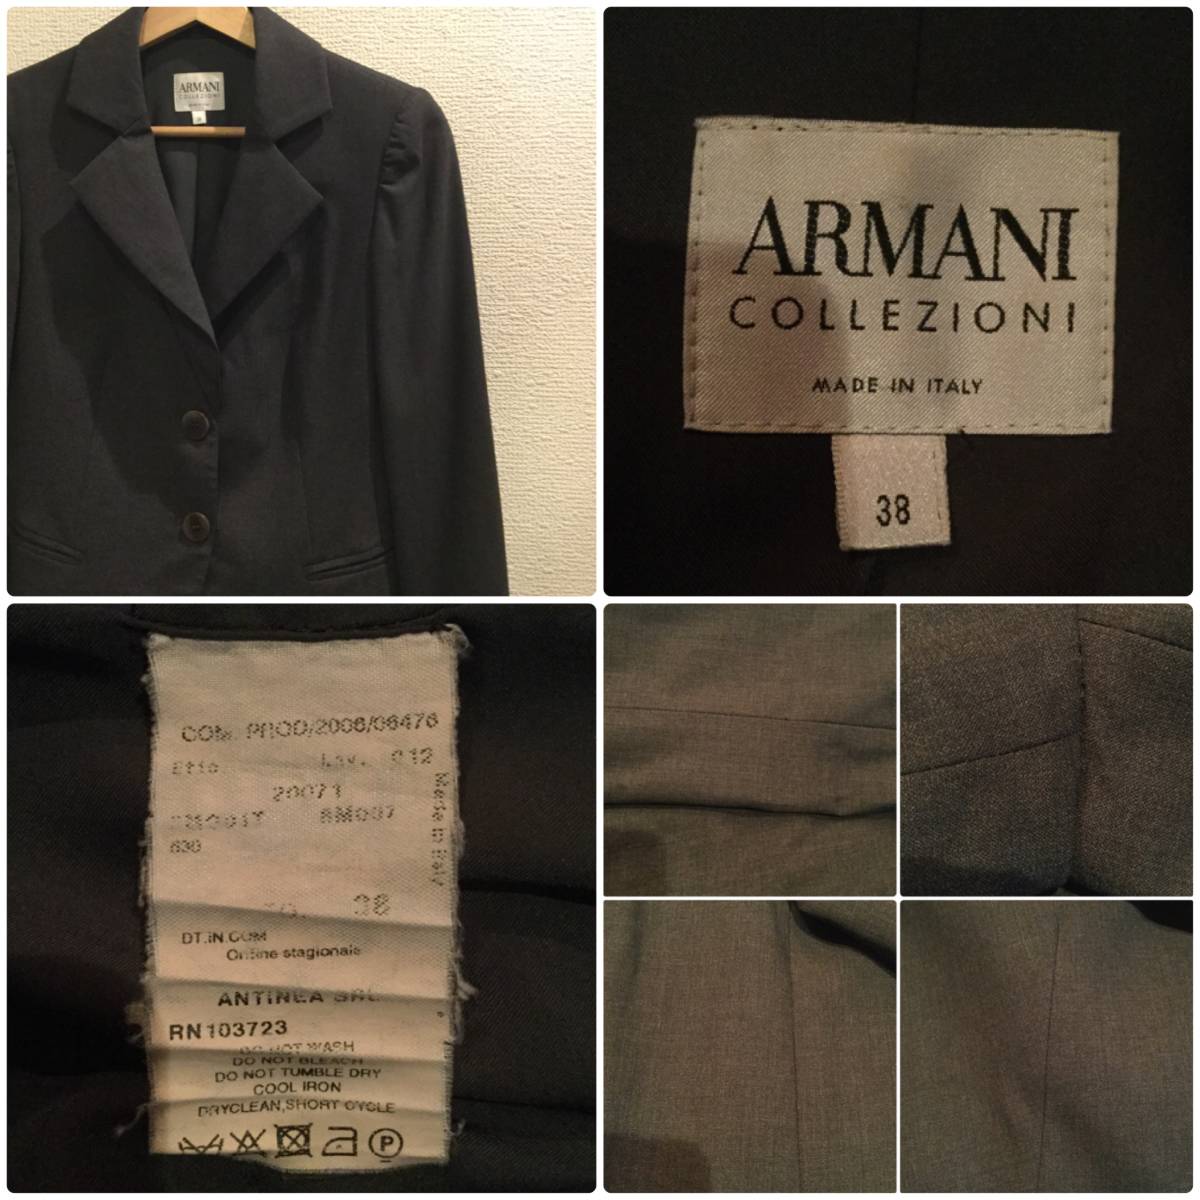  Armani ko let's .-ni2.. tailored jacket 38